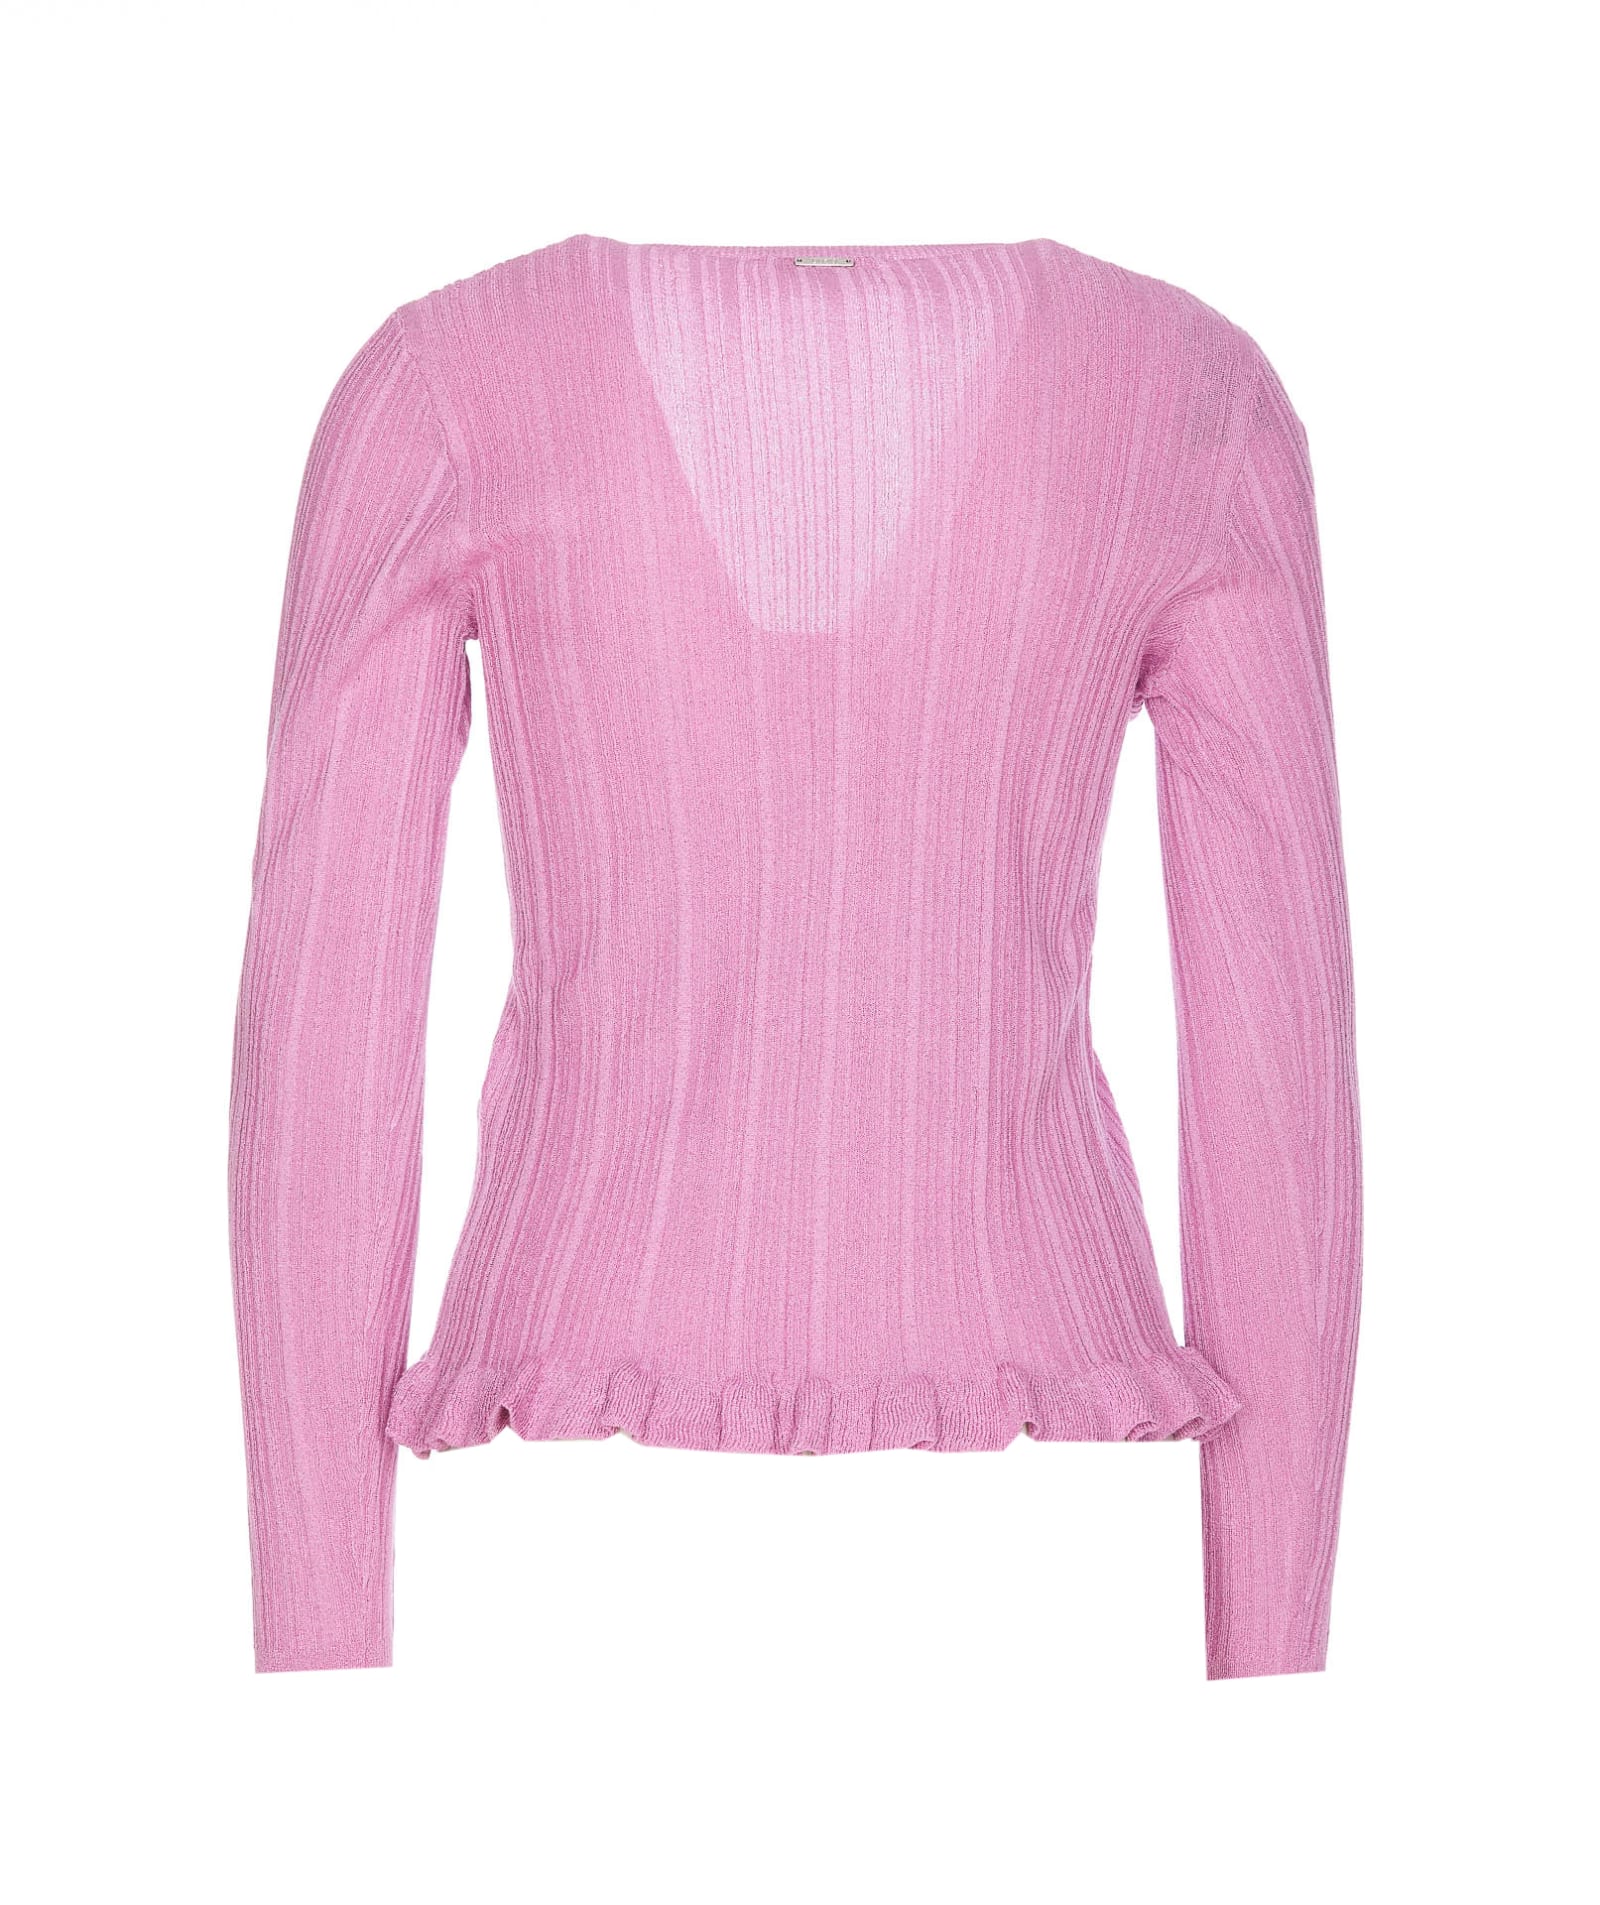 Shop Liu •jo Long Sleeves Top In Pink